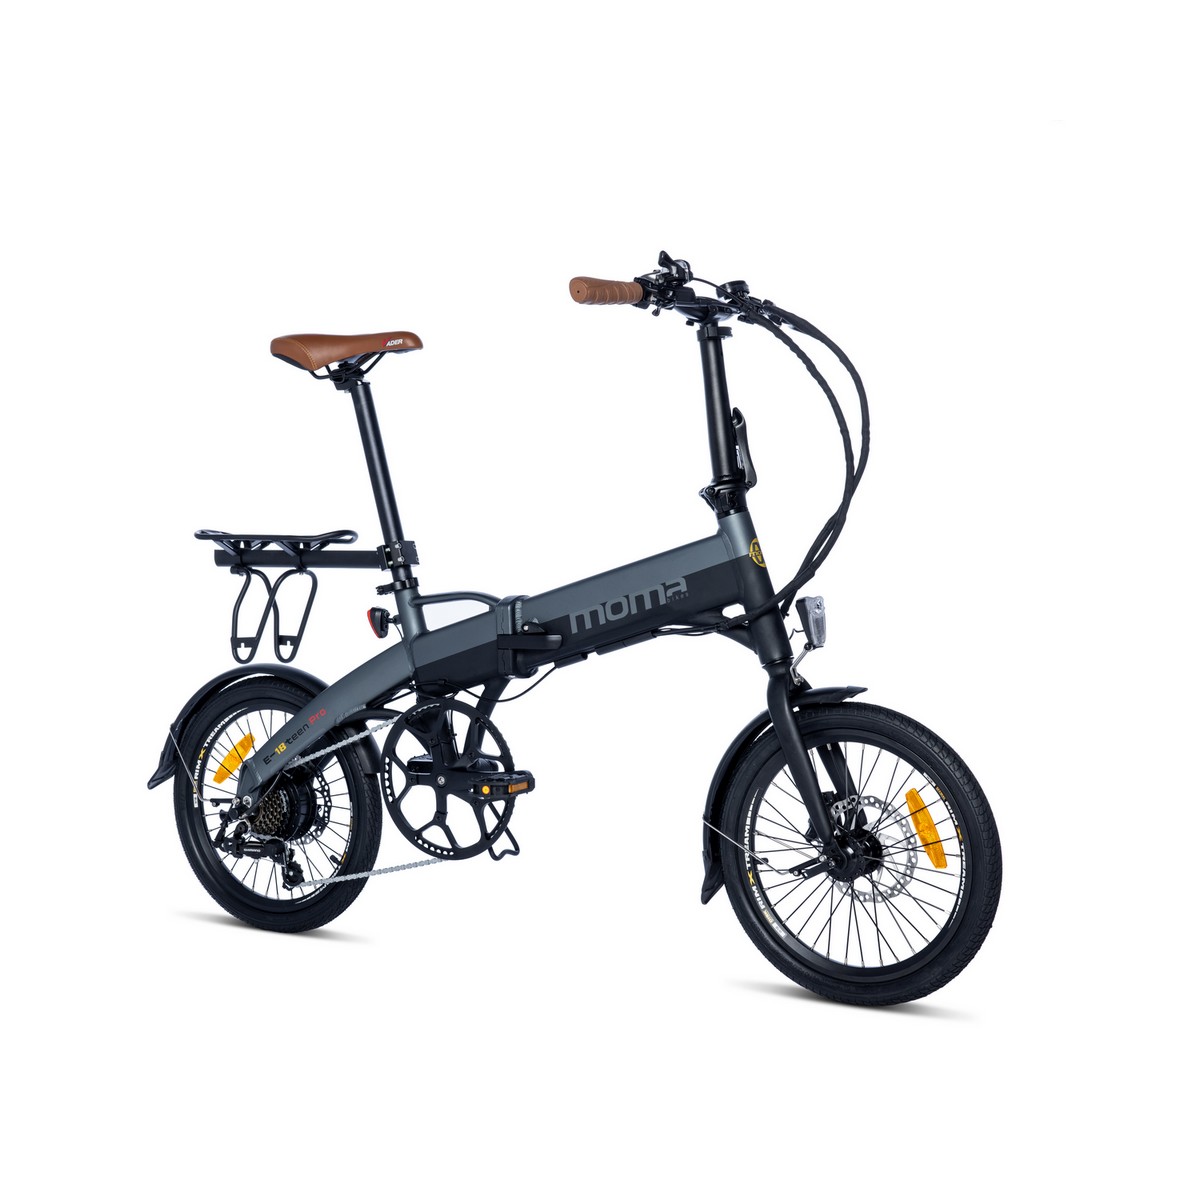 Bicicleta Electrica Plegable, Moma Bikes E18teen, Aluminio. Shimano 7v. Bat. Ion Litio 36v 9ah